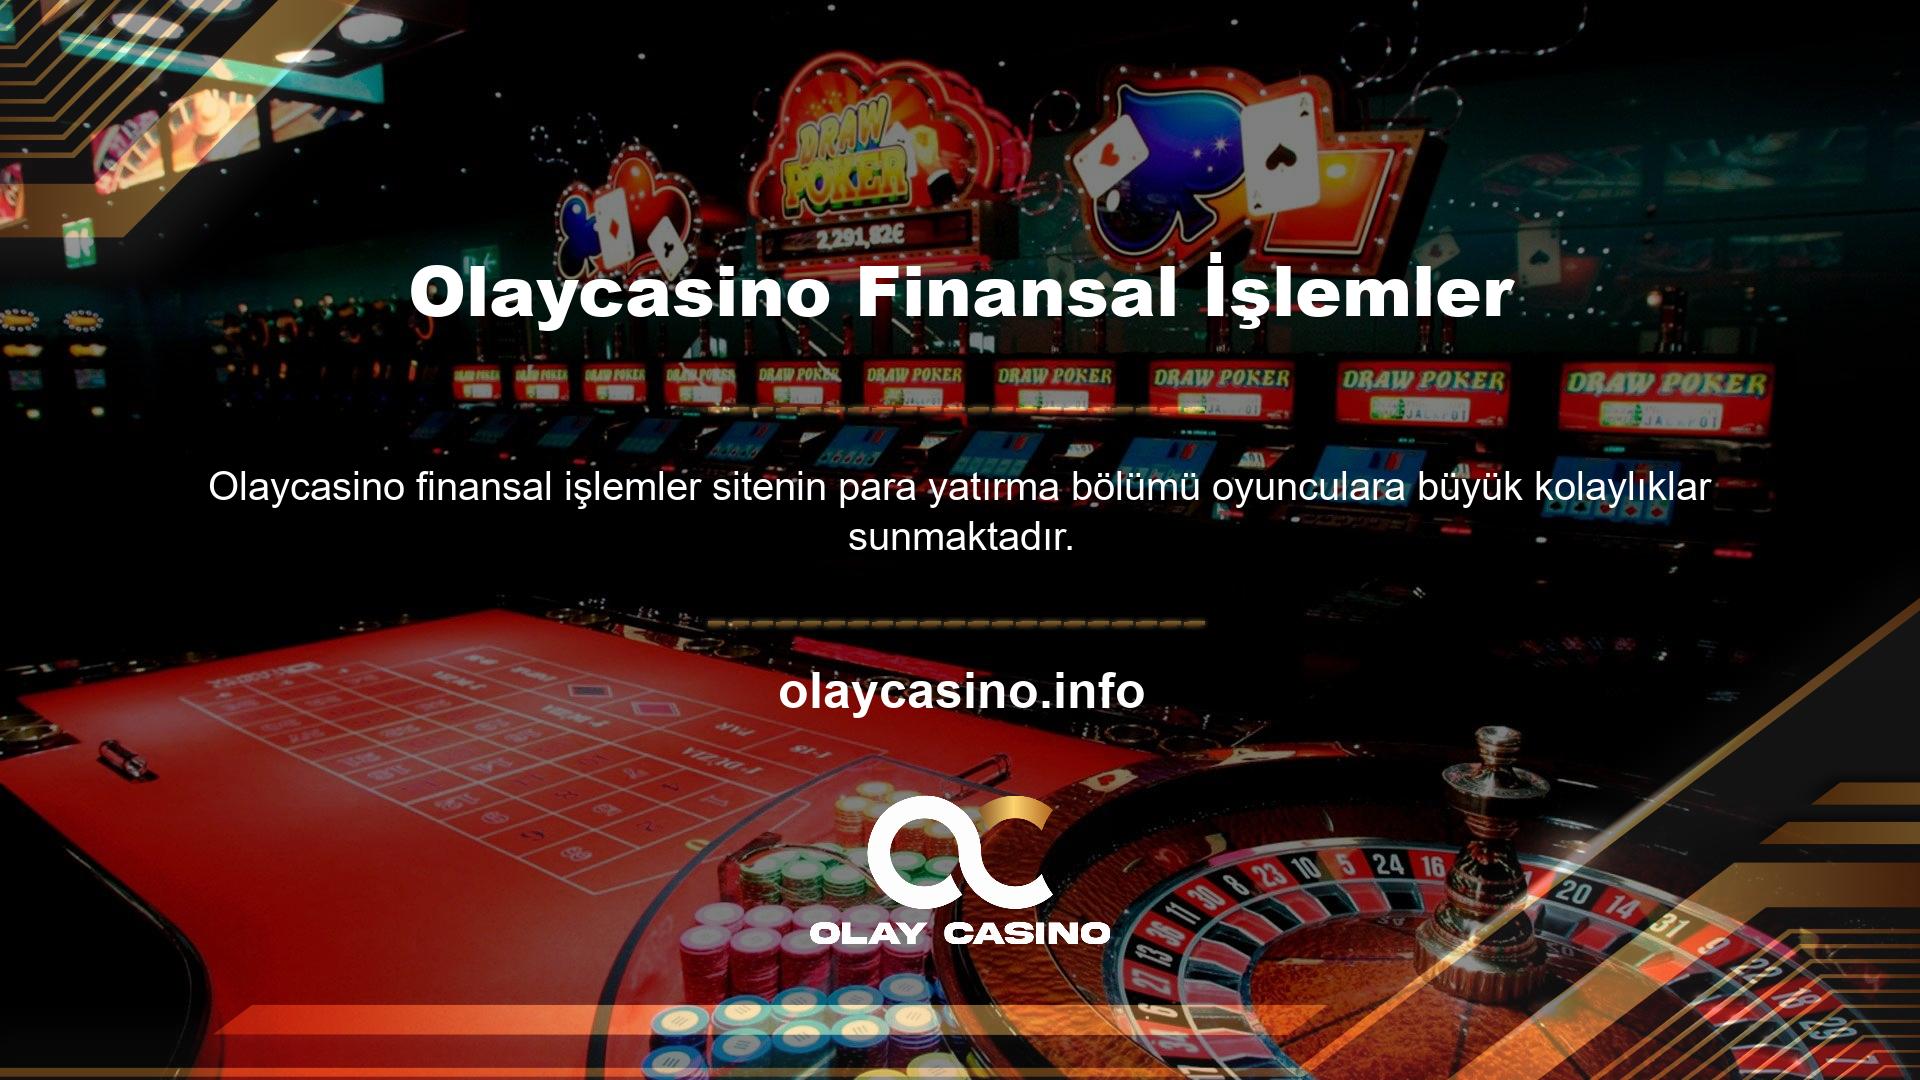 Bu site şu anda aktif olarak Türkiye'de en yaygın kullanılan yatırım tekniklerini kullanmaktadır